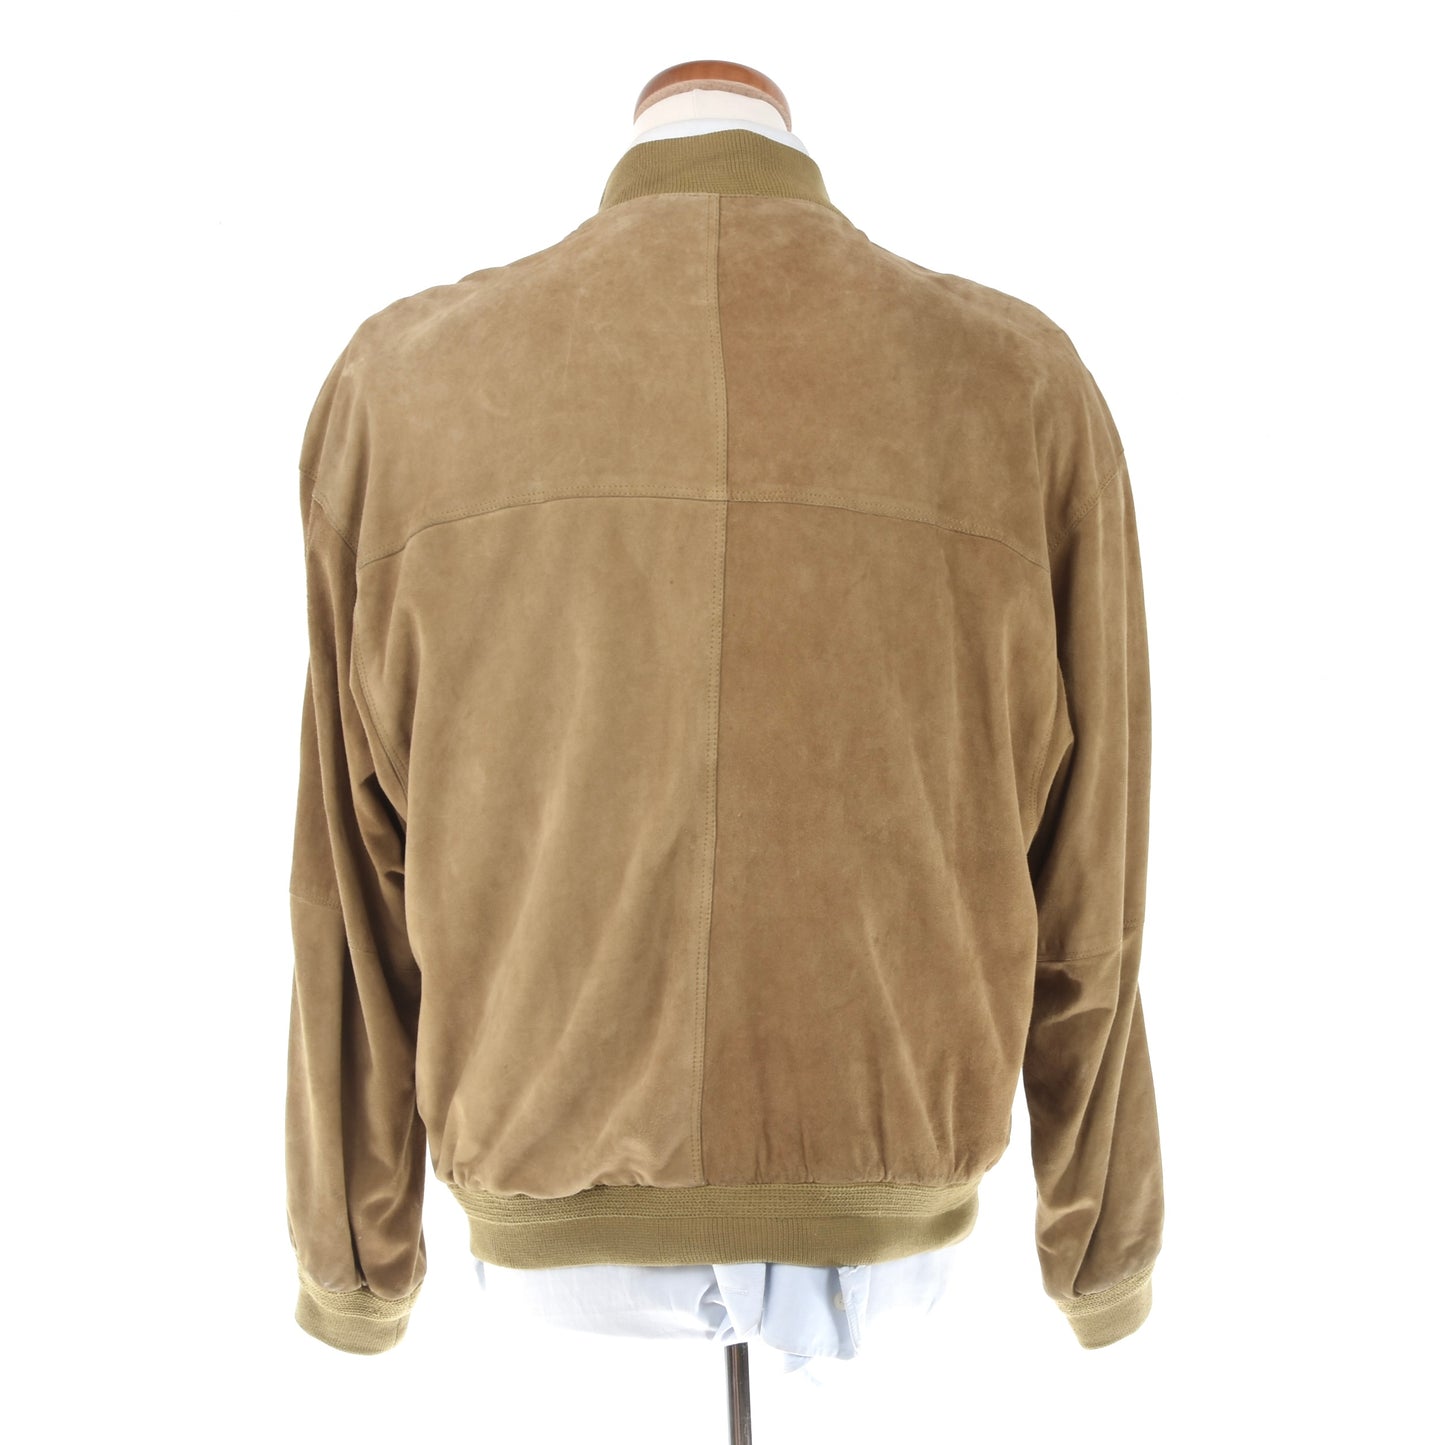 Seraphin Leather Jacket/Blouson - Tan/Beige